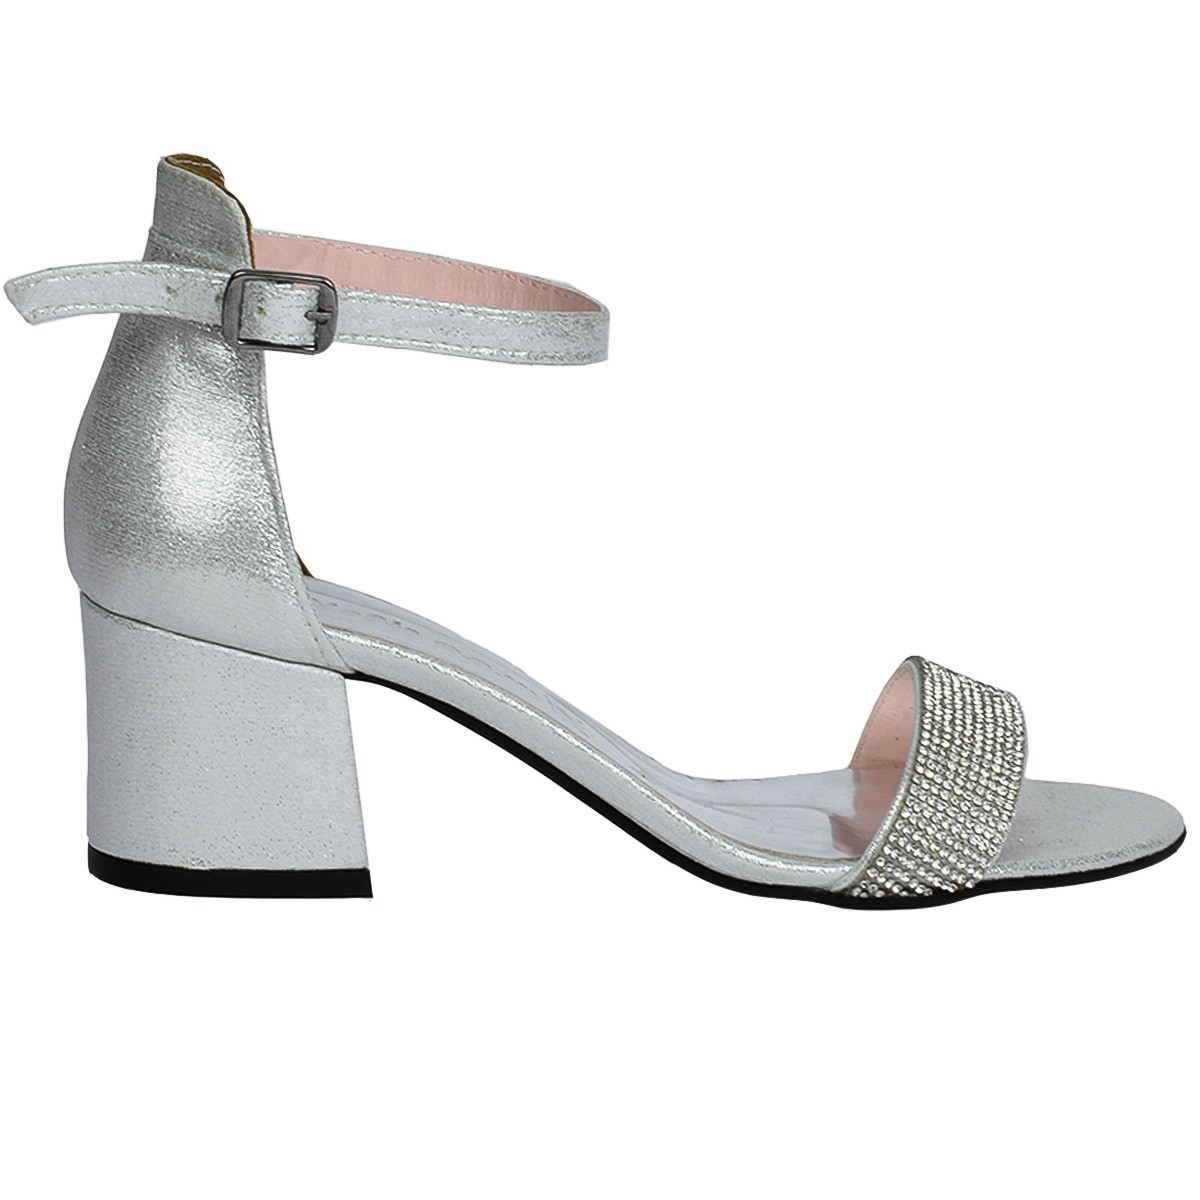 Flo 038-03 Taşlı 5 Cm Topuk Bayan Sandalet Ayakkabı Gümüş. 3